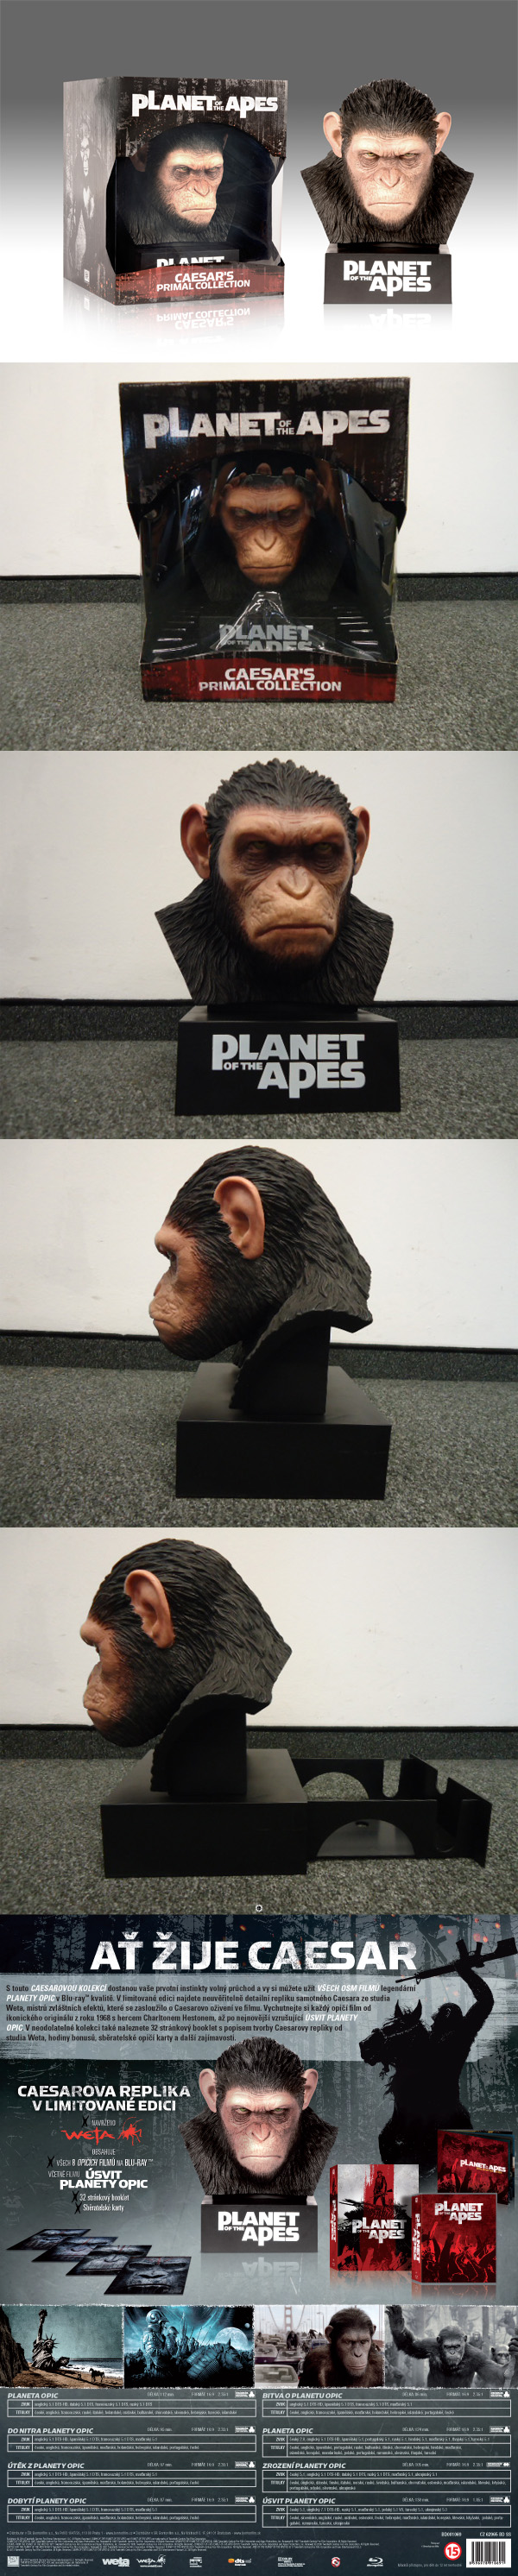 Planeta Opic - Sběratelská kolekce